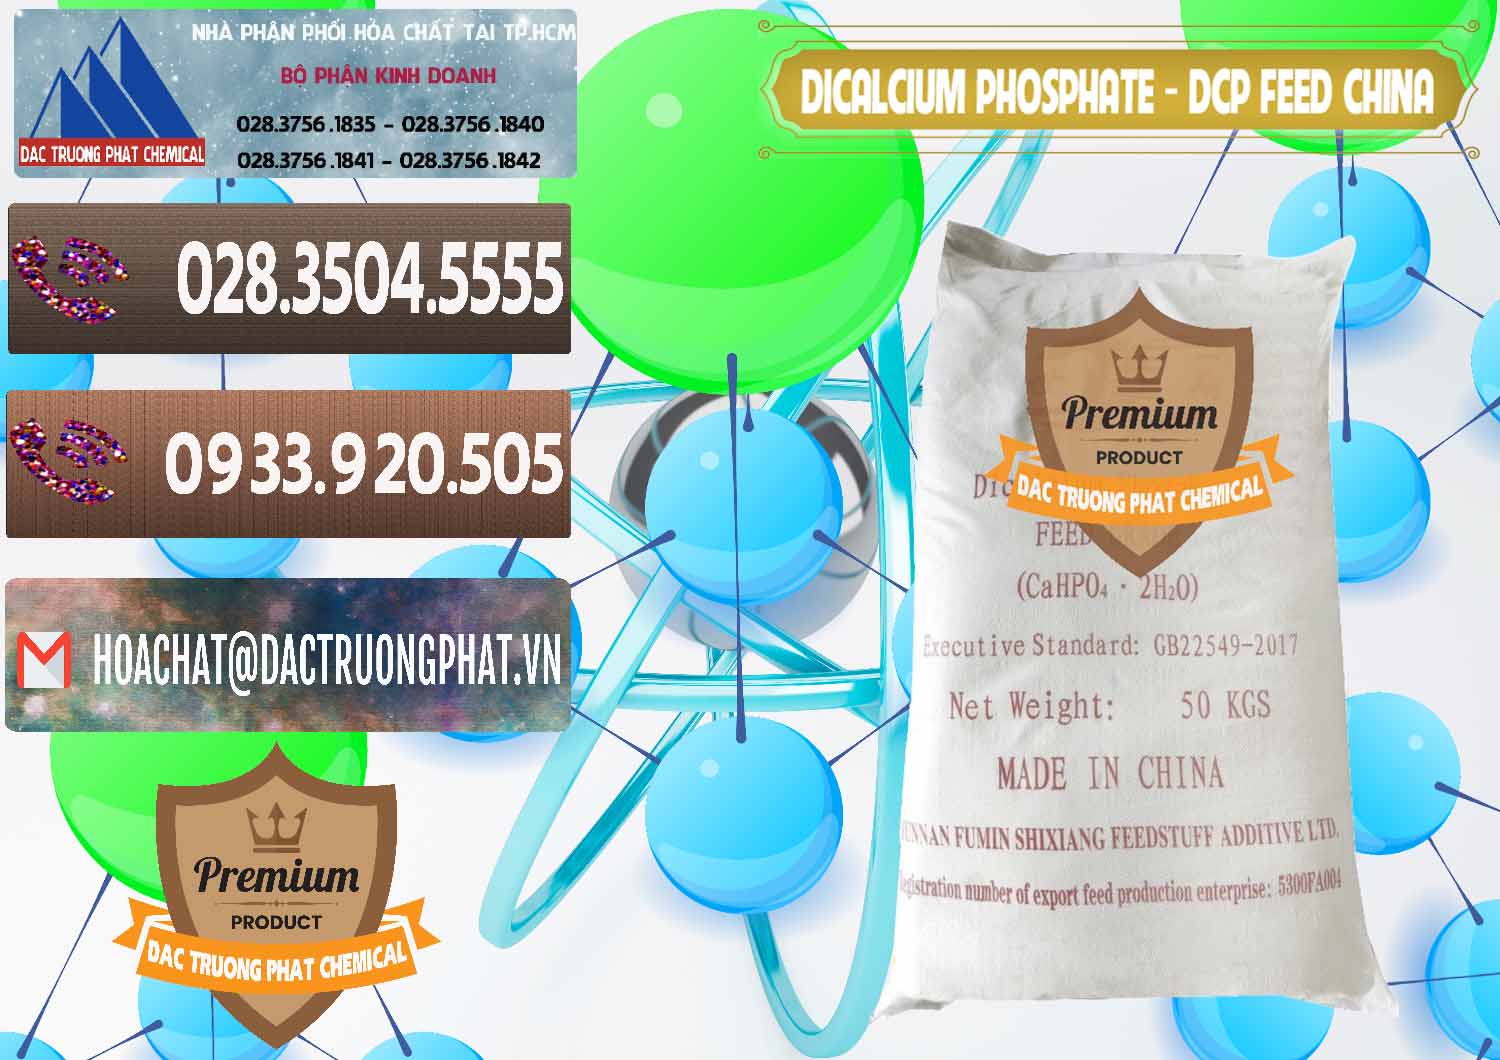 Kinh doanh - bán Dicalcium Phosphate - DCP Feed Grade Trung Quốc China - 0296 - Chuyên cung cấp - phân phối hóa chất tại TP.HCM - hoachatviet.net